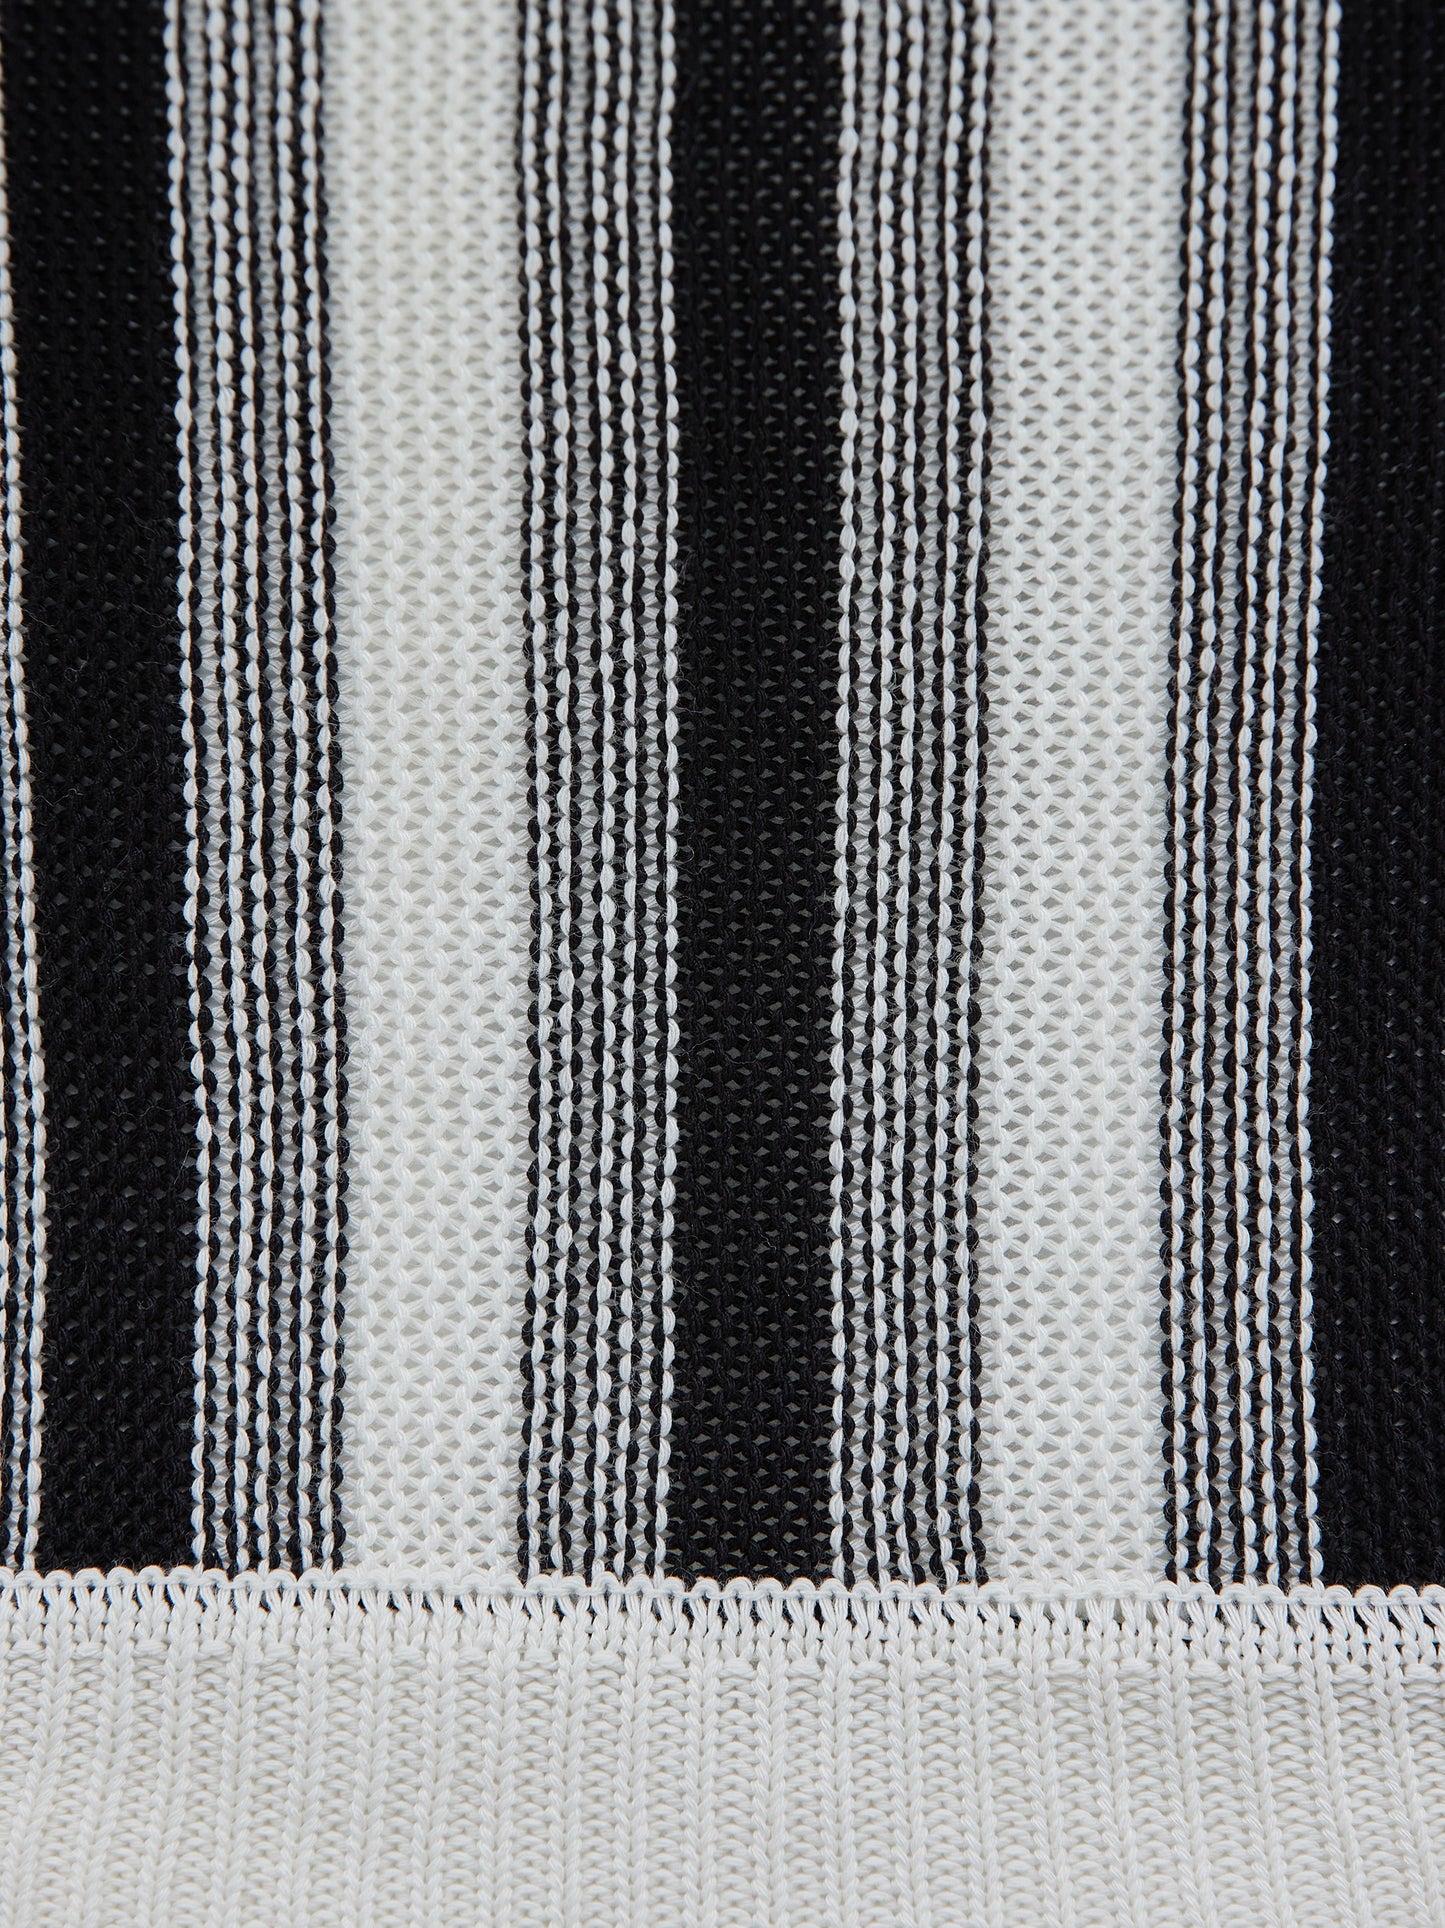 Braided Strap Knit, Ivory